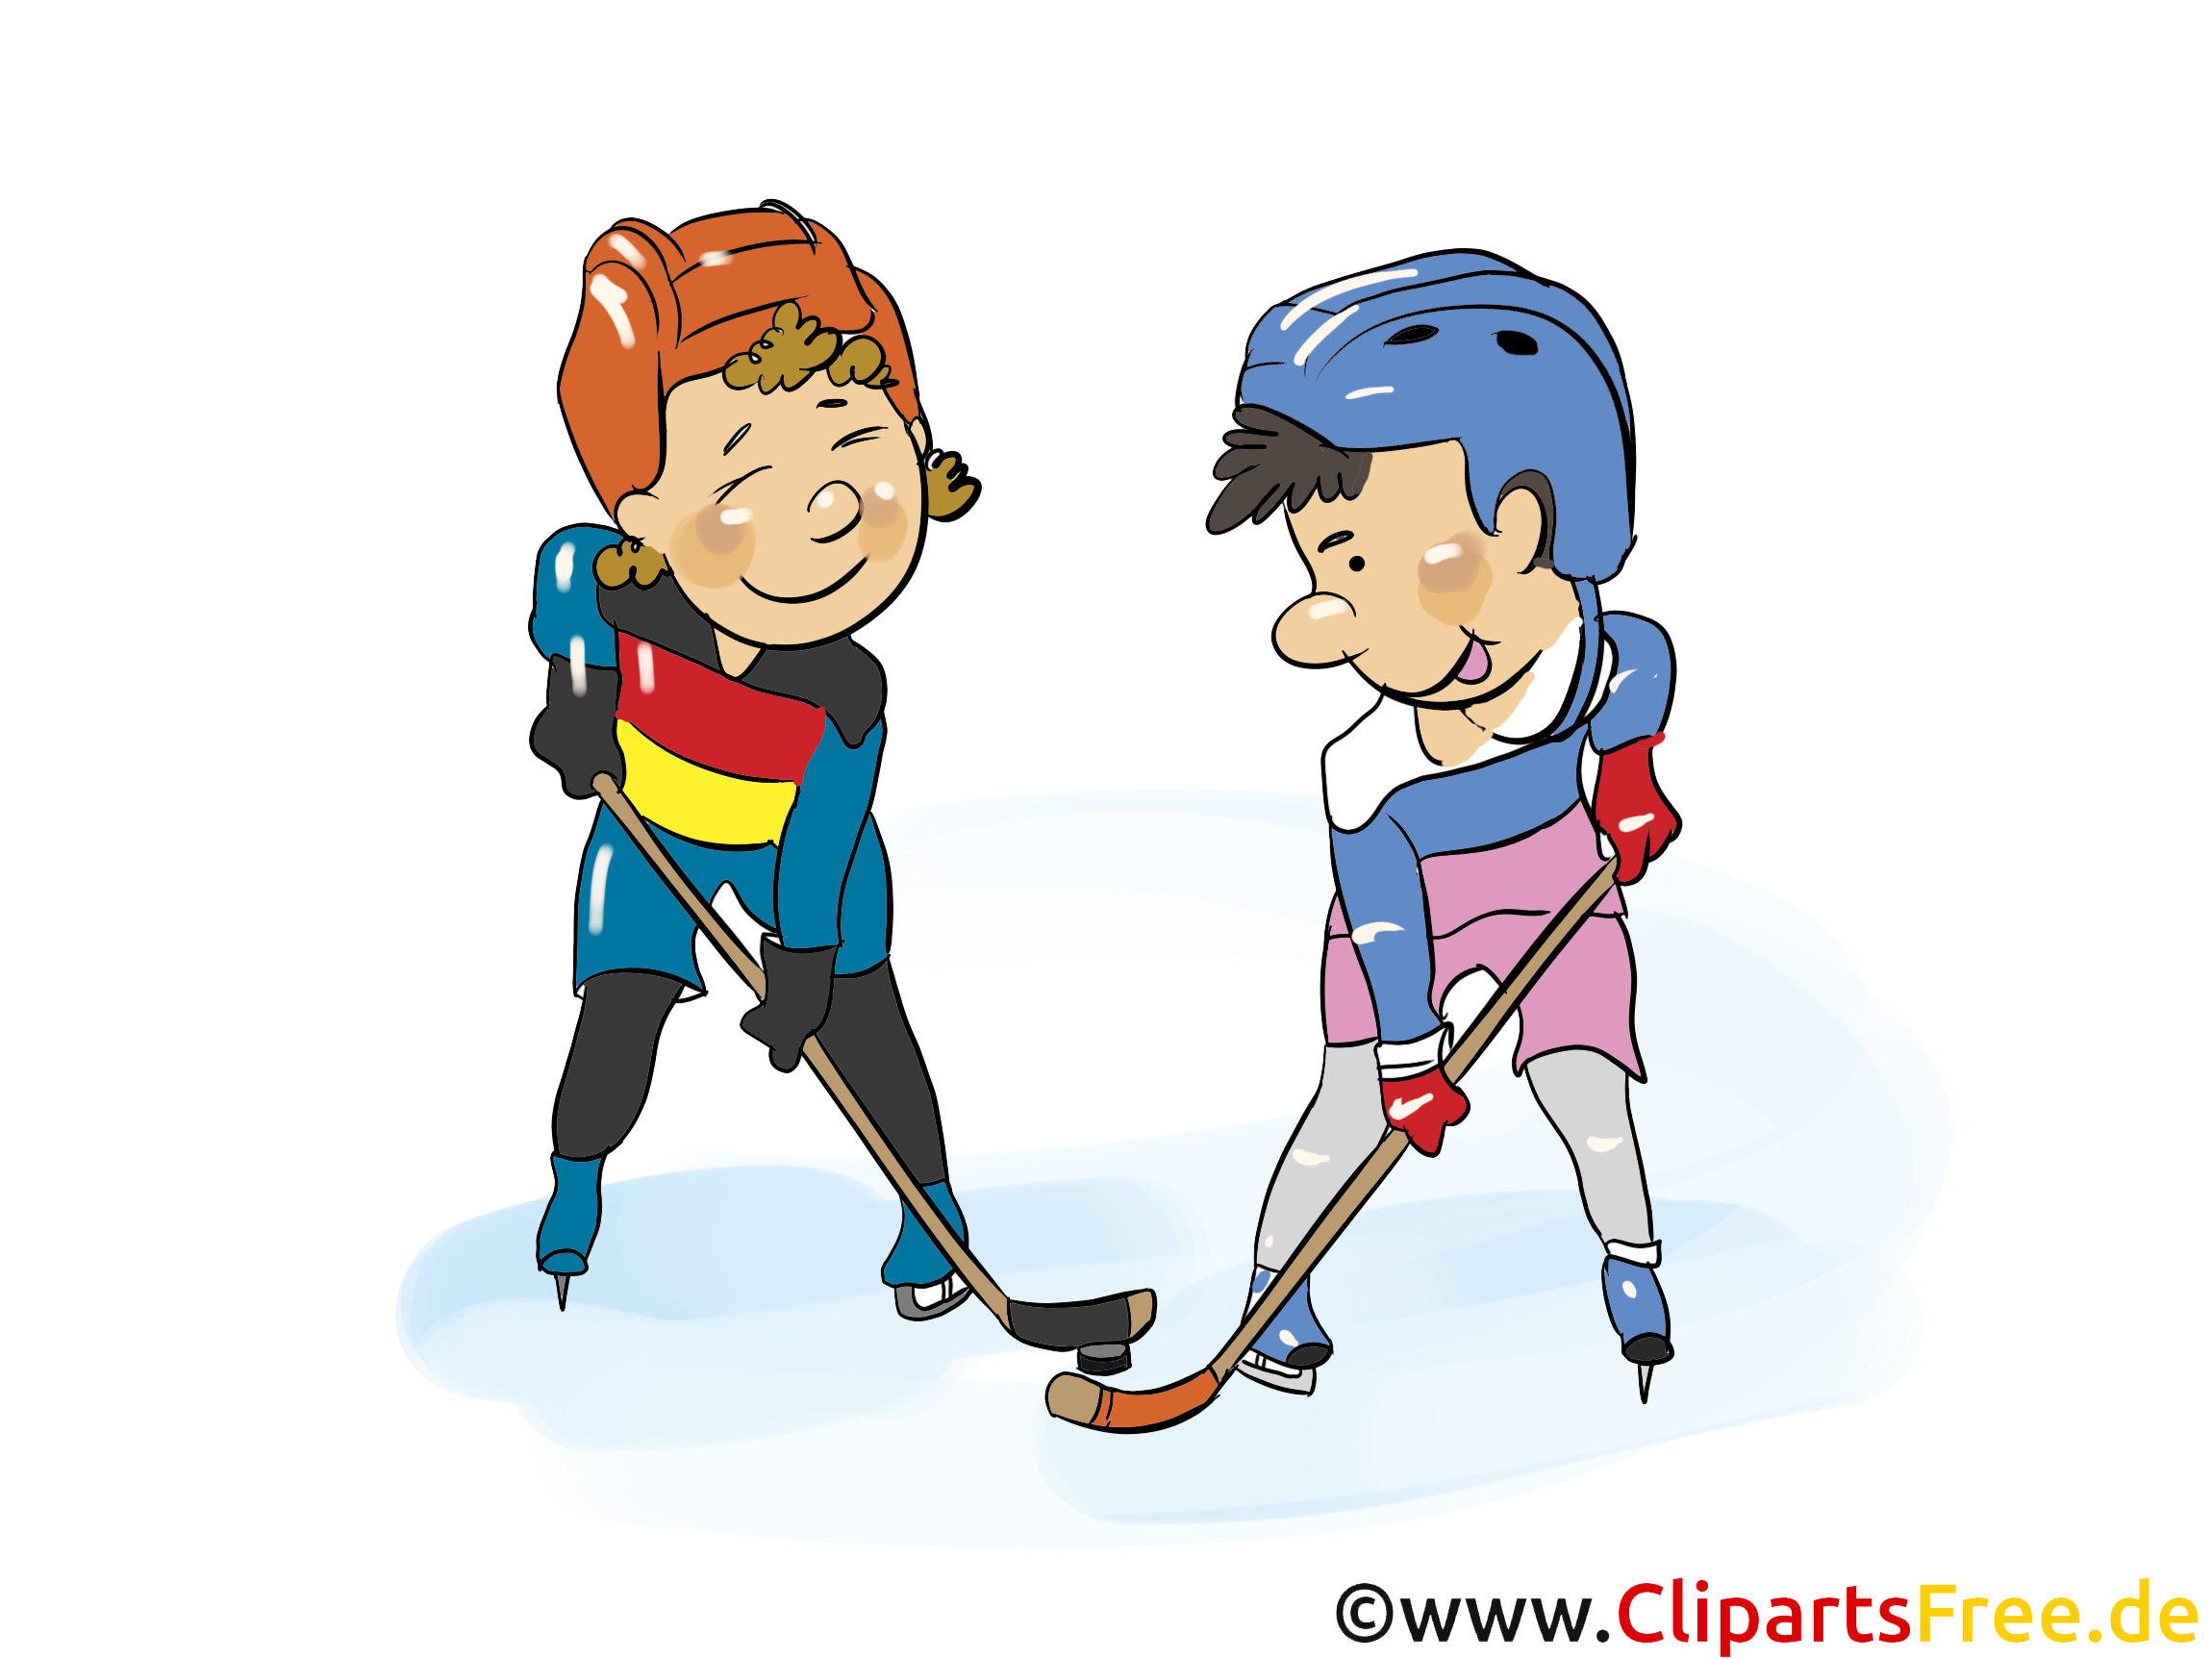 Hockeyeur dessin - Hockey cliparts à télécharger